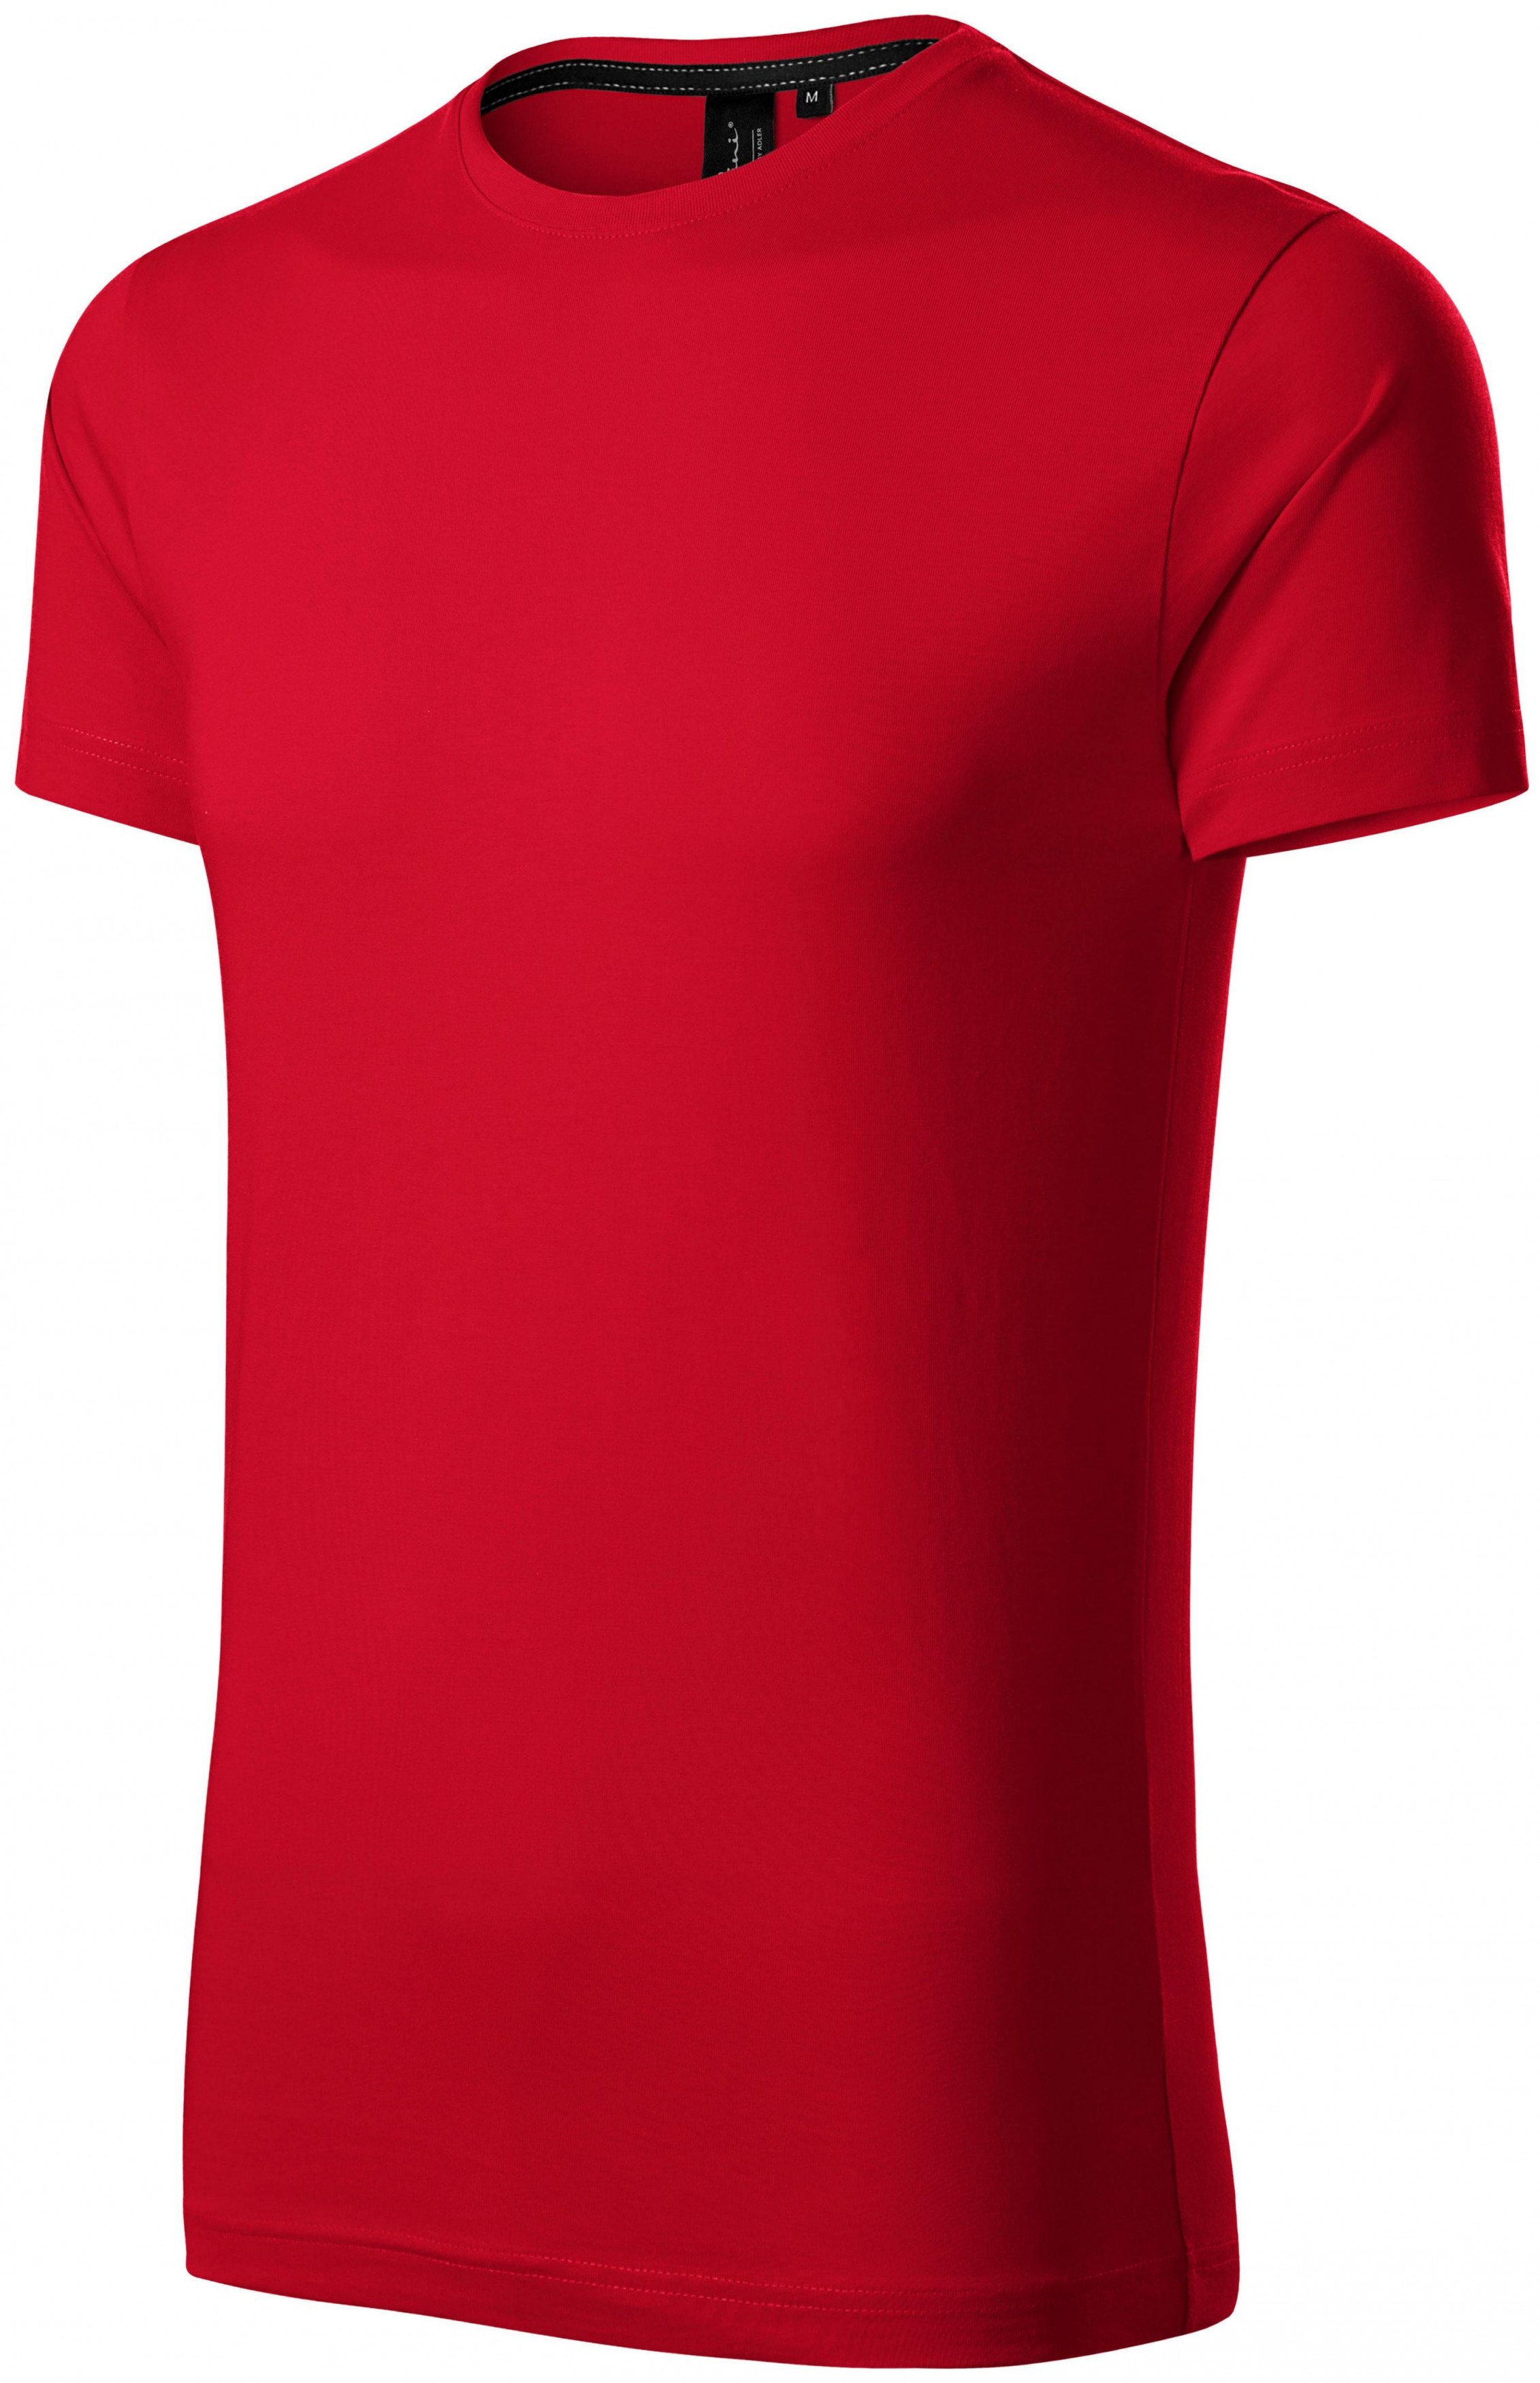 Exkluzívne pánske tričko, formula červená, M